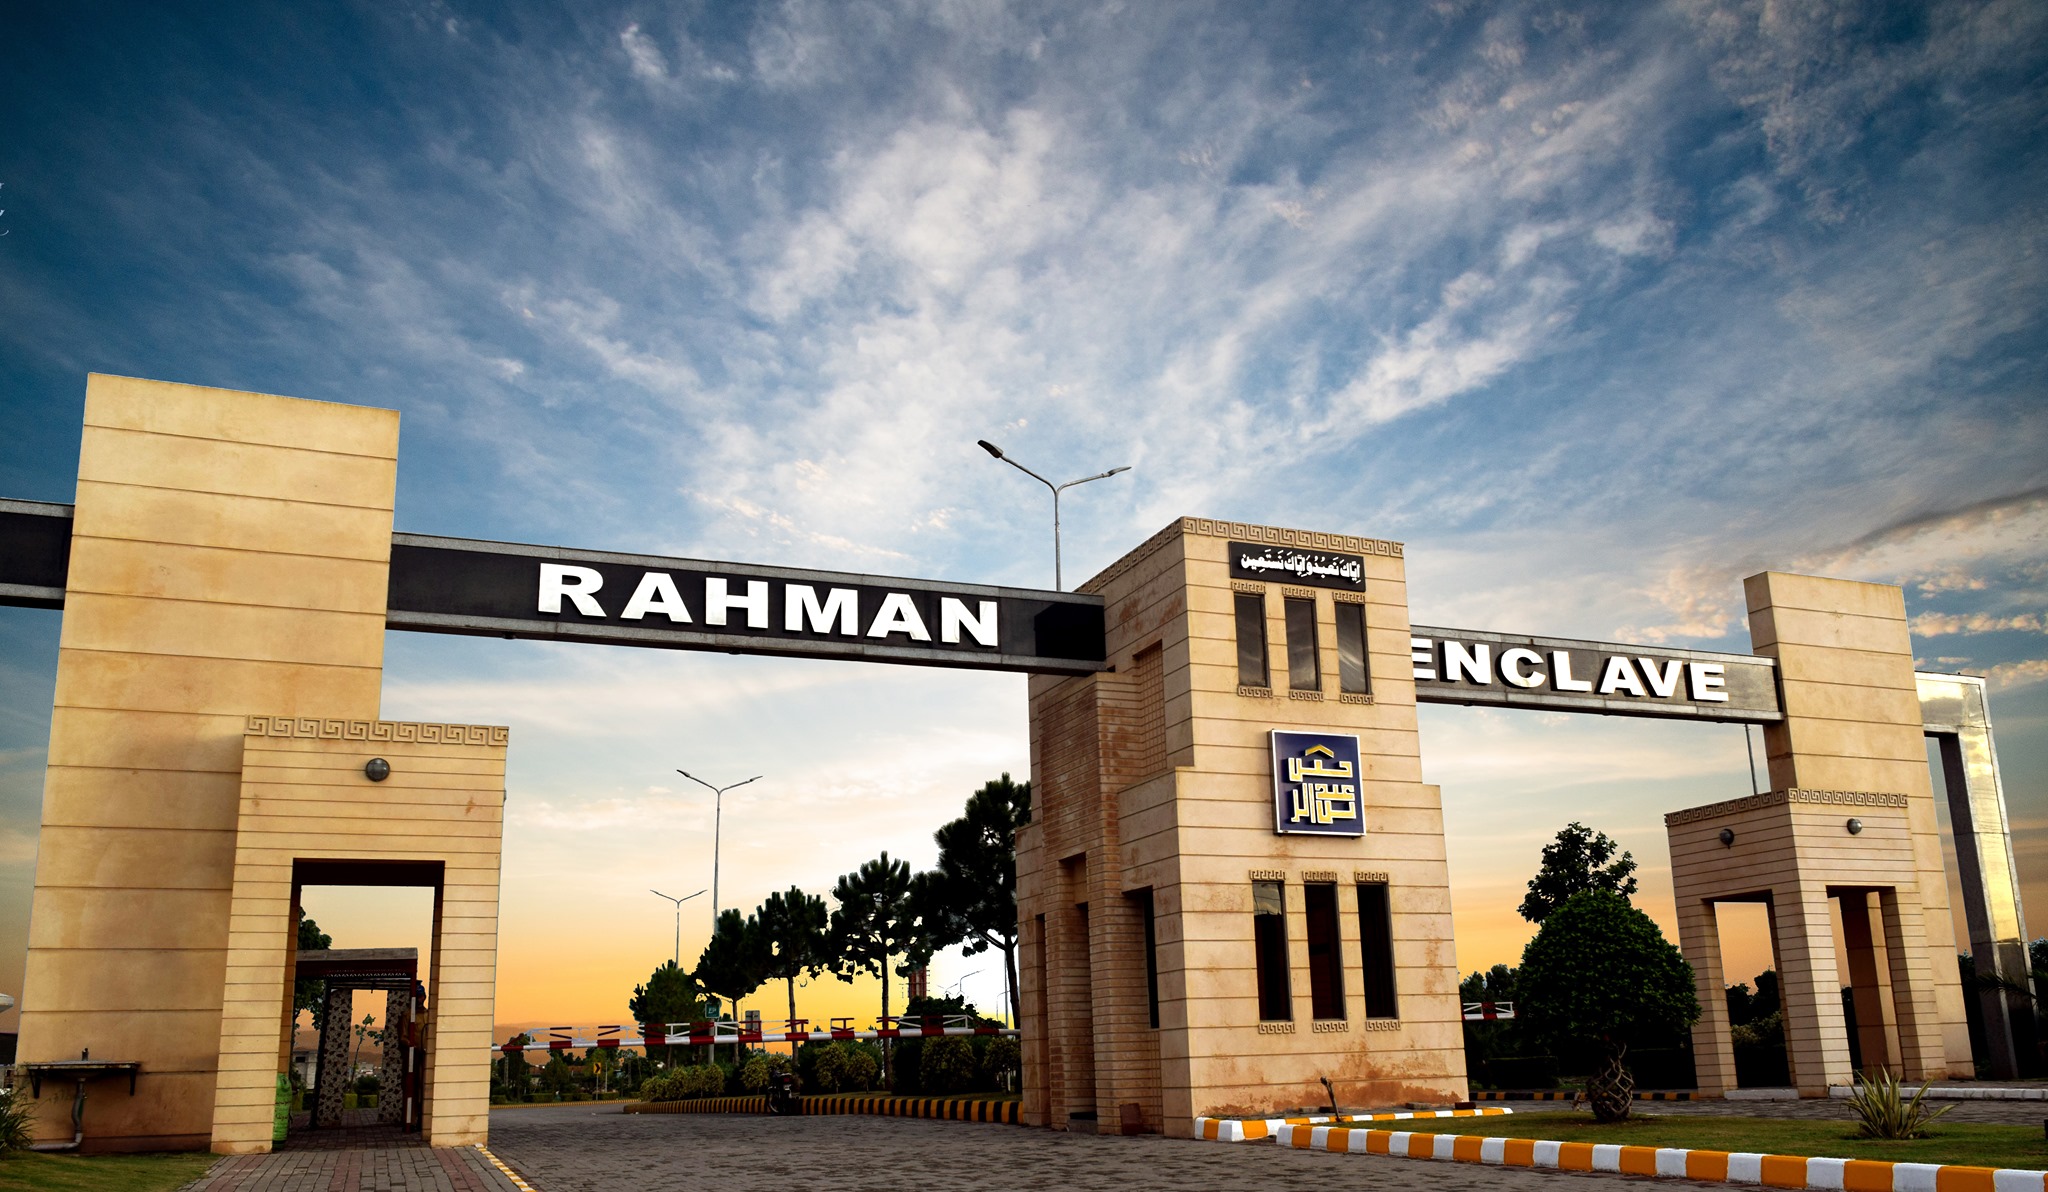 Entrance of Rahman Enclave